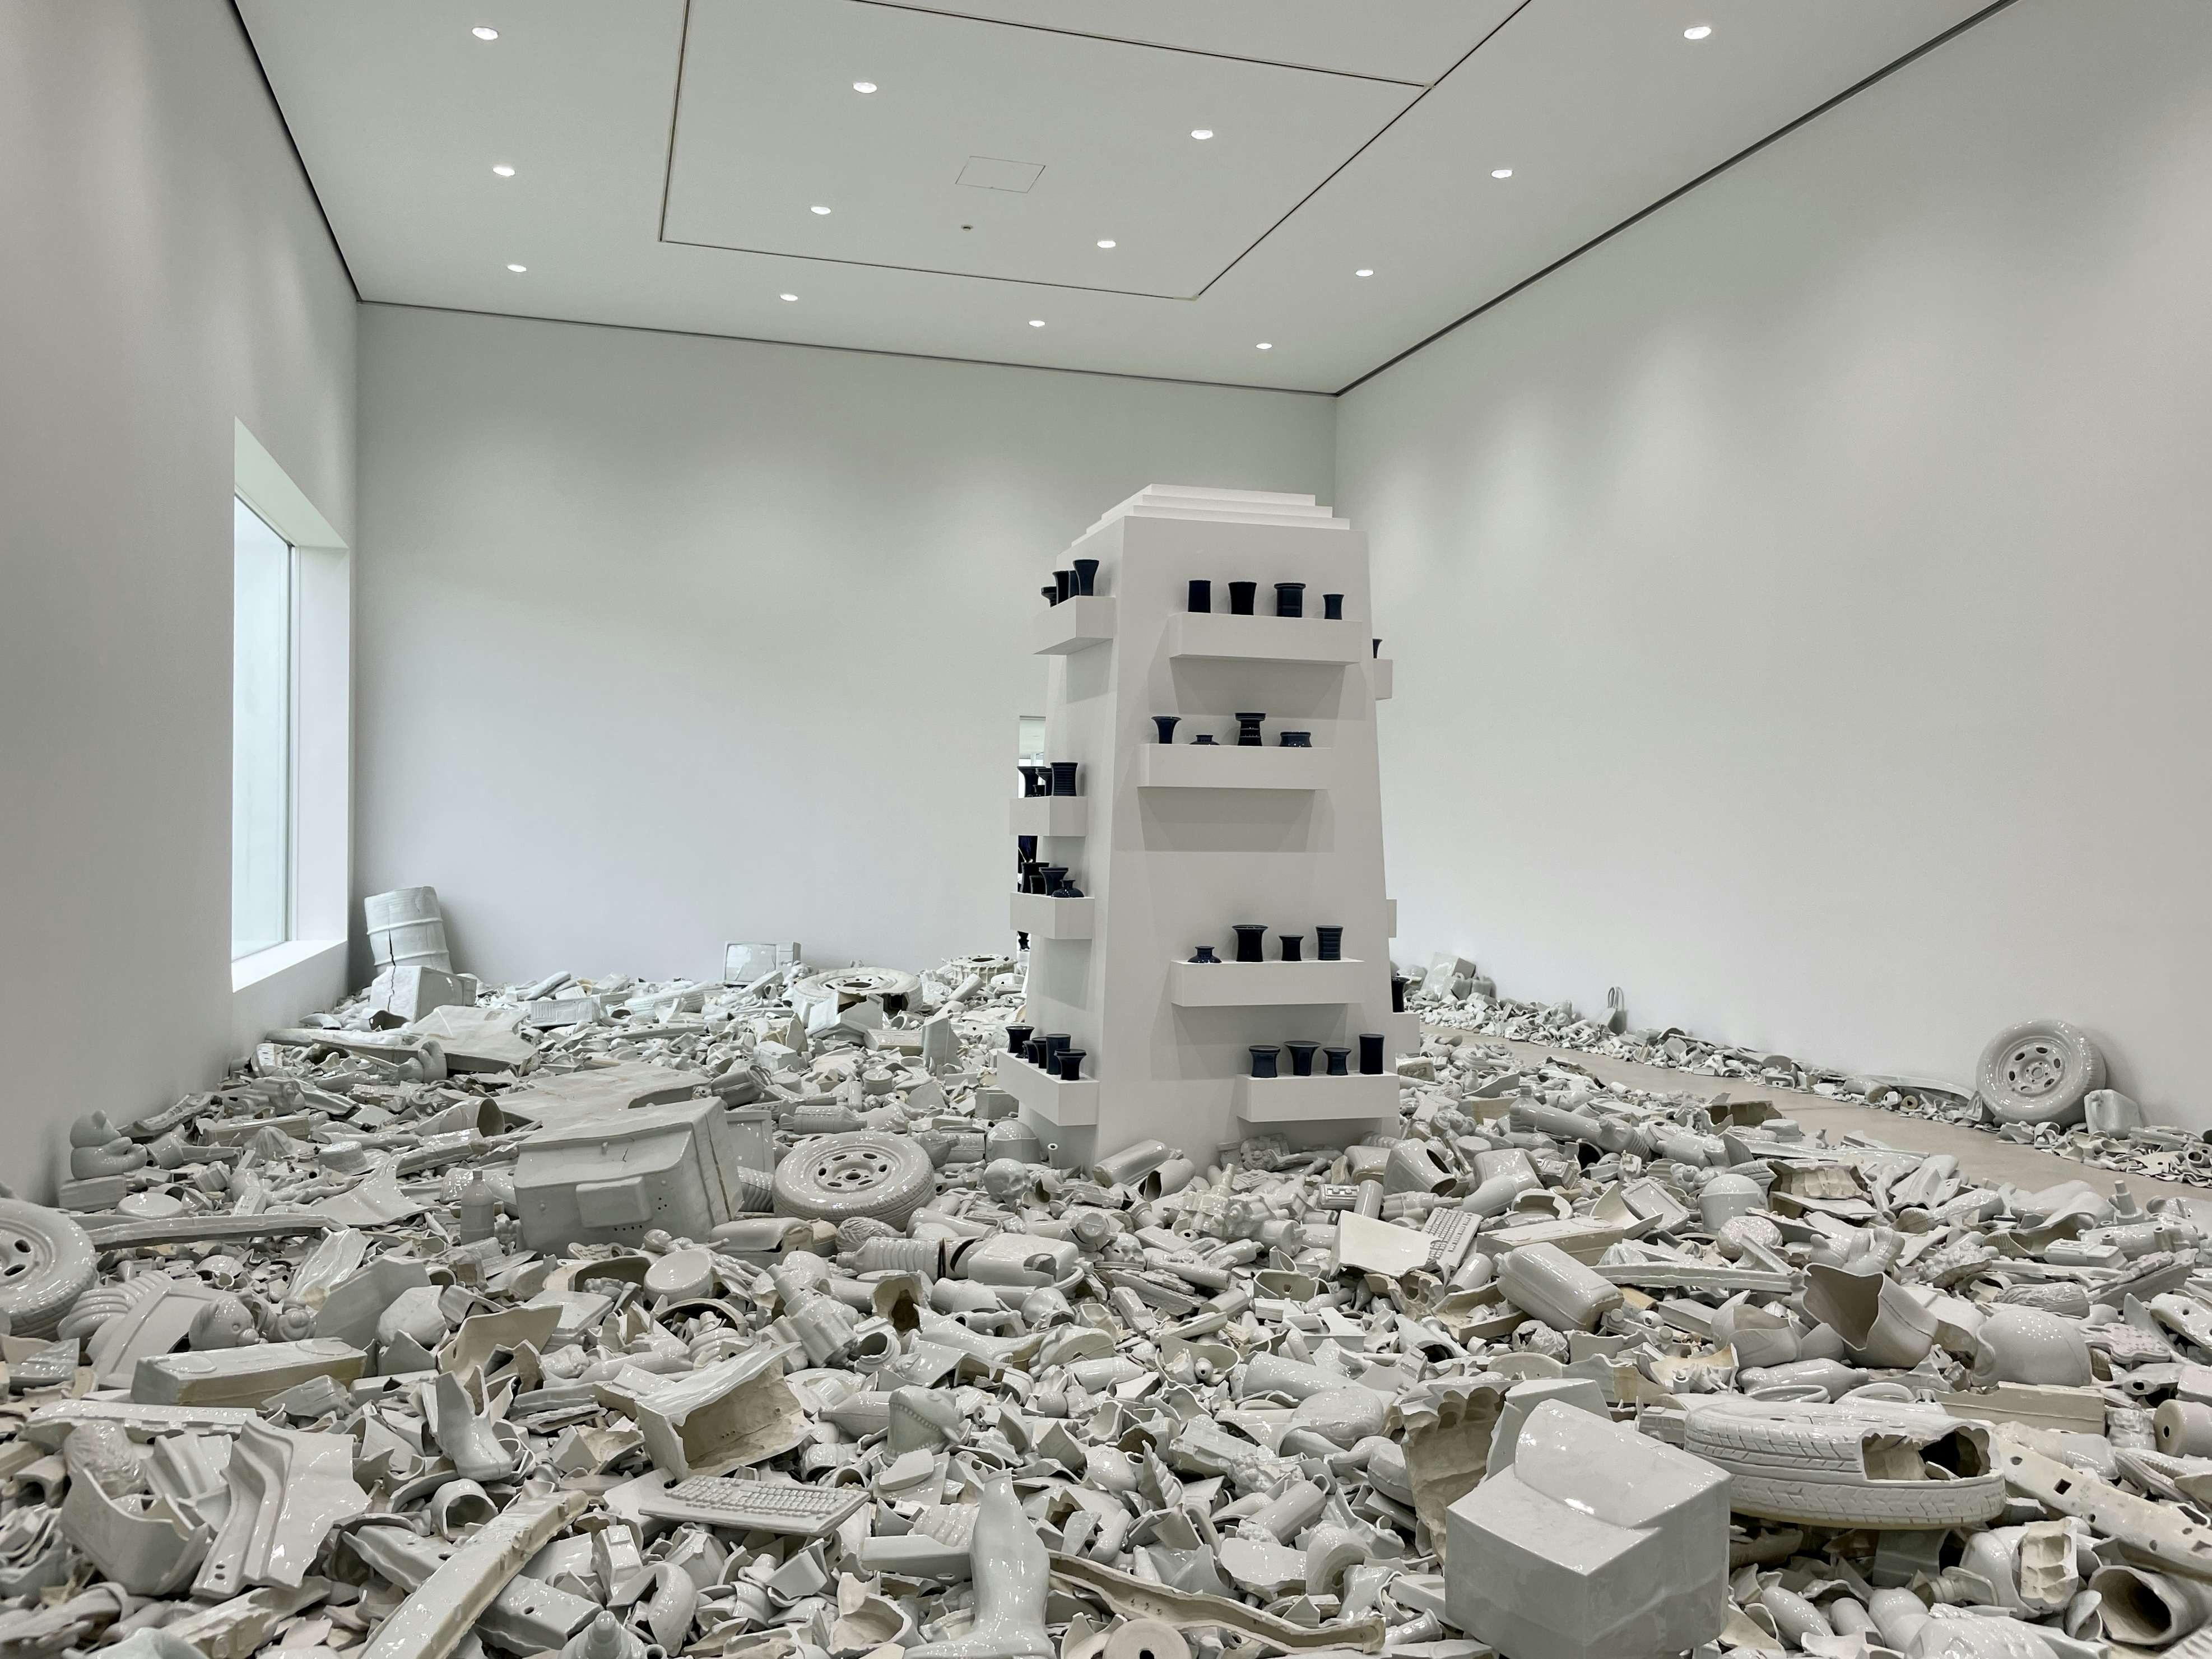 劉建華展「中空を注ぐ」で追う、磁器を媒体とした中国人芸術家の創作と